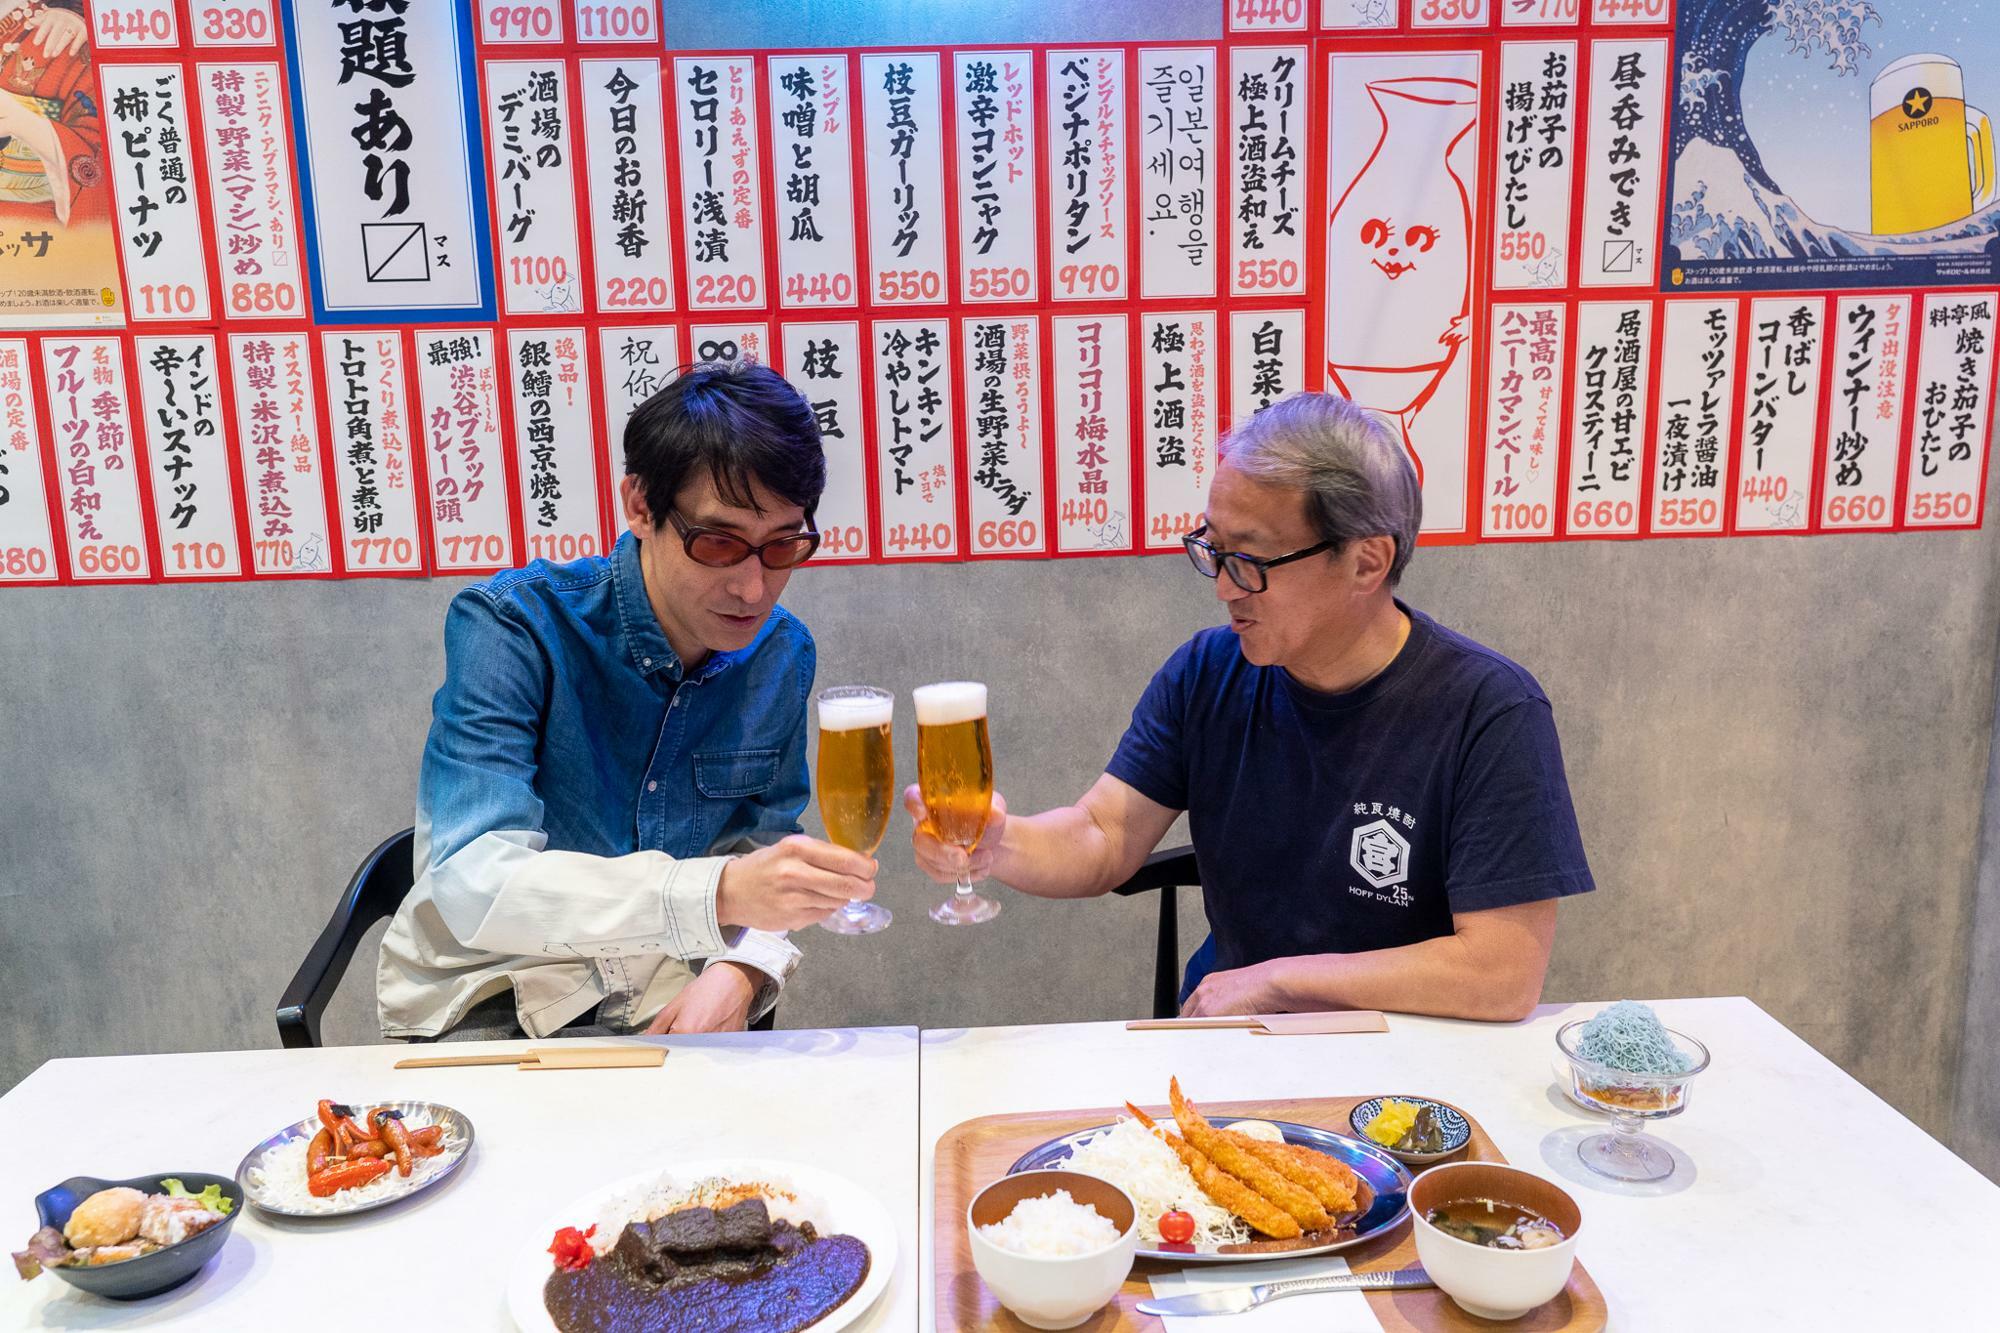 渋谷区観光大使・小宮山雄飛さん（左）と東急株式会社 常務執行役員・東浦亮典さん（右）。今回の対談はまずは乾杯からスタート